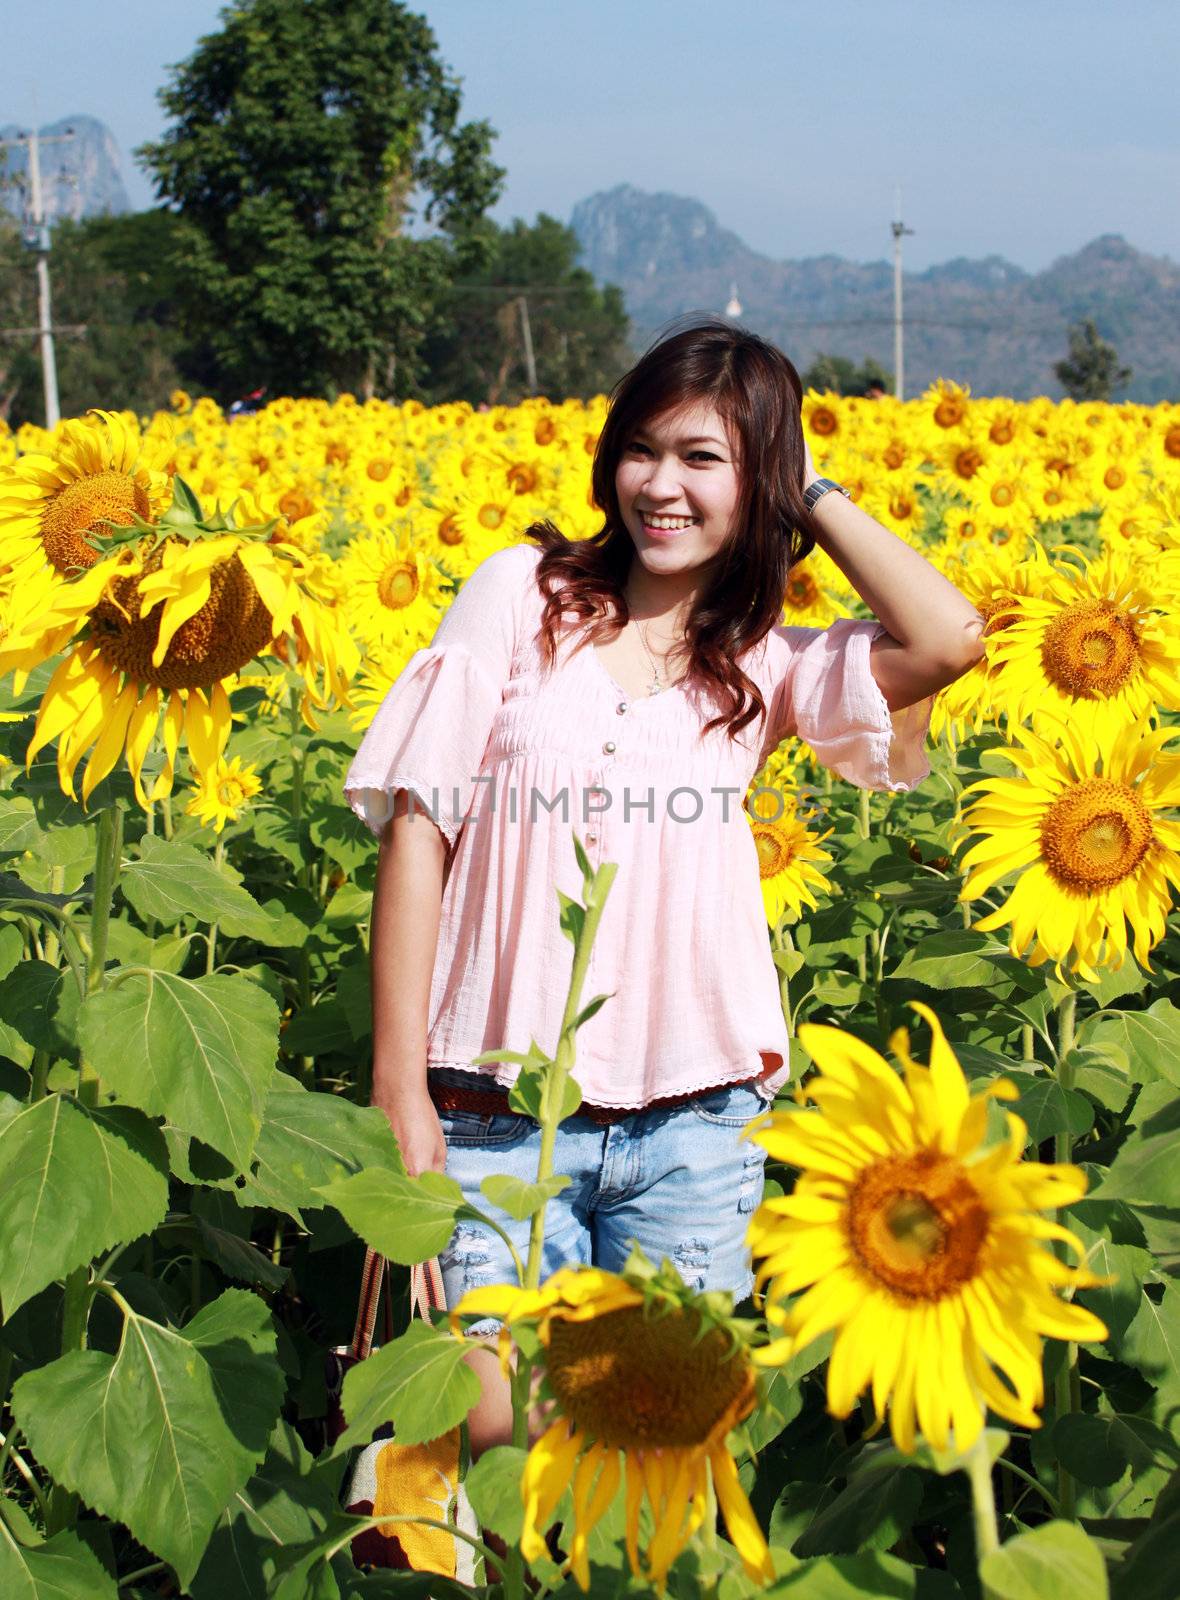 Women in the field of sunflowers by geargodz